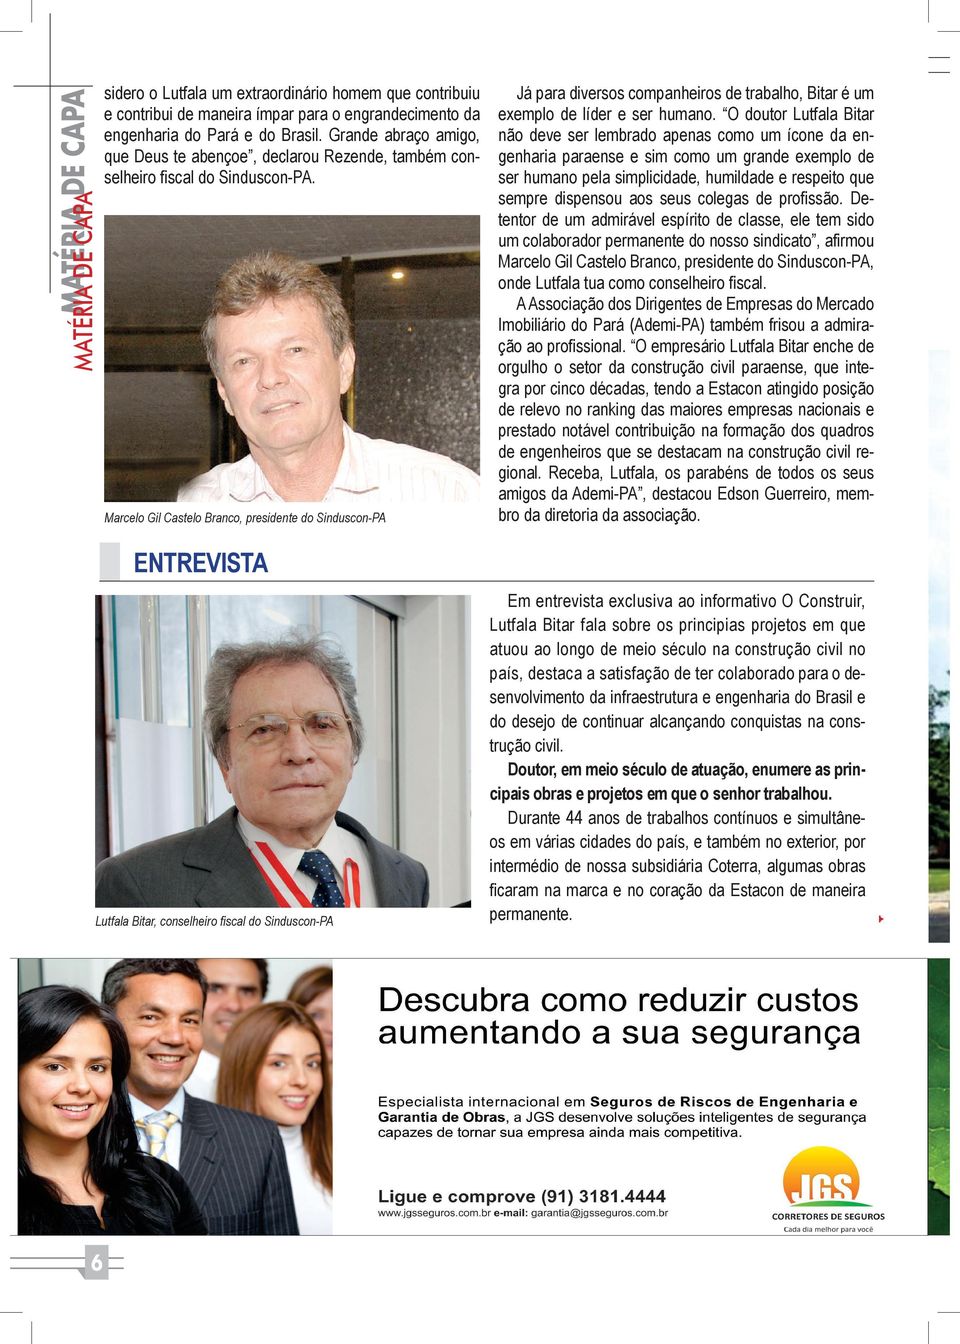 Marcelo Gil Castelo Branco, presidente do Sinduscon-PA Já para diversos companheiros de trabalho, Bitar é um exemplo de líder e ser humano.